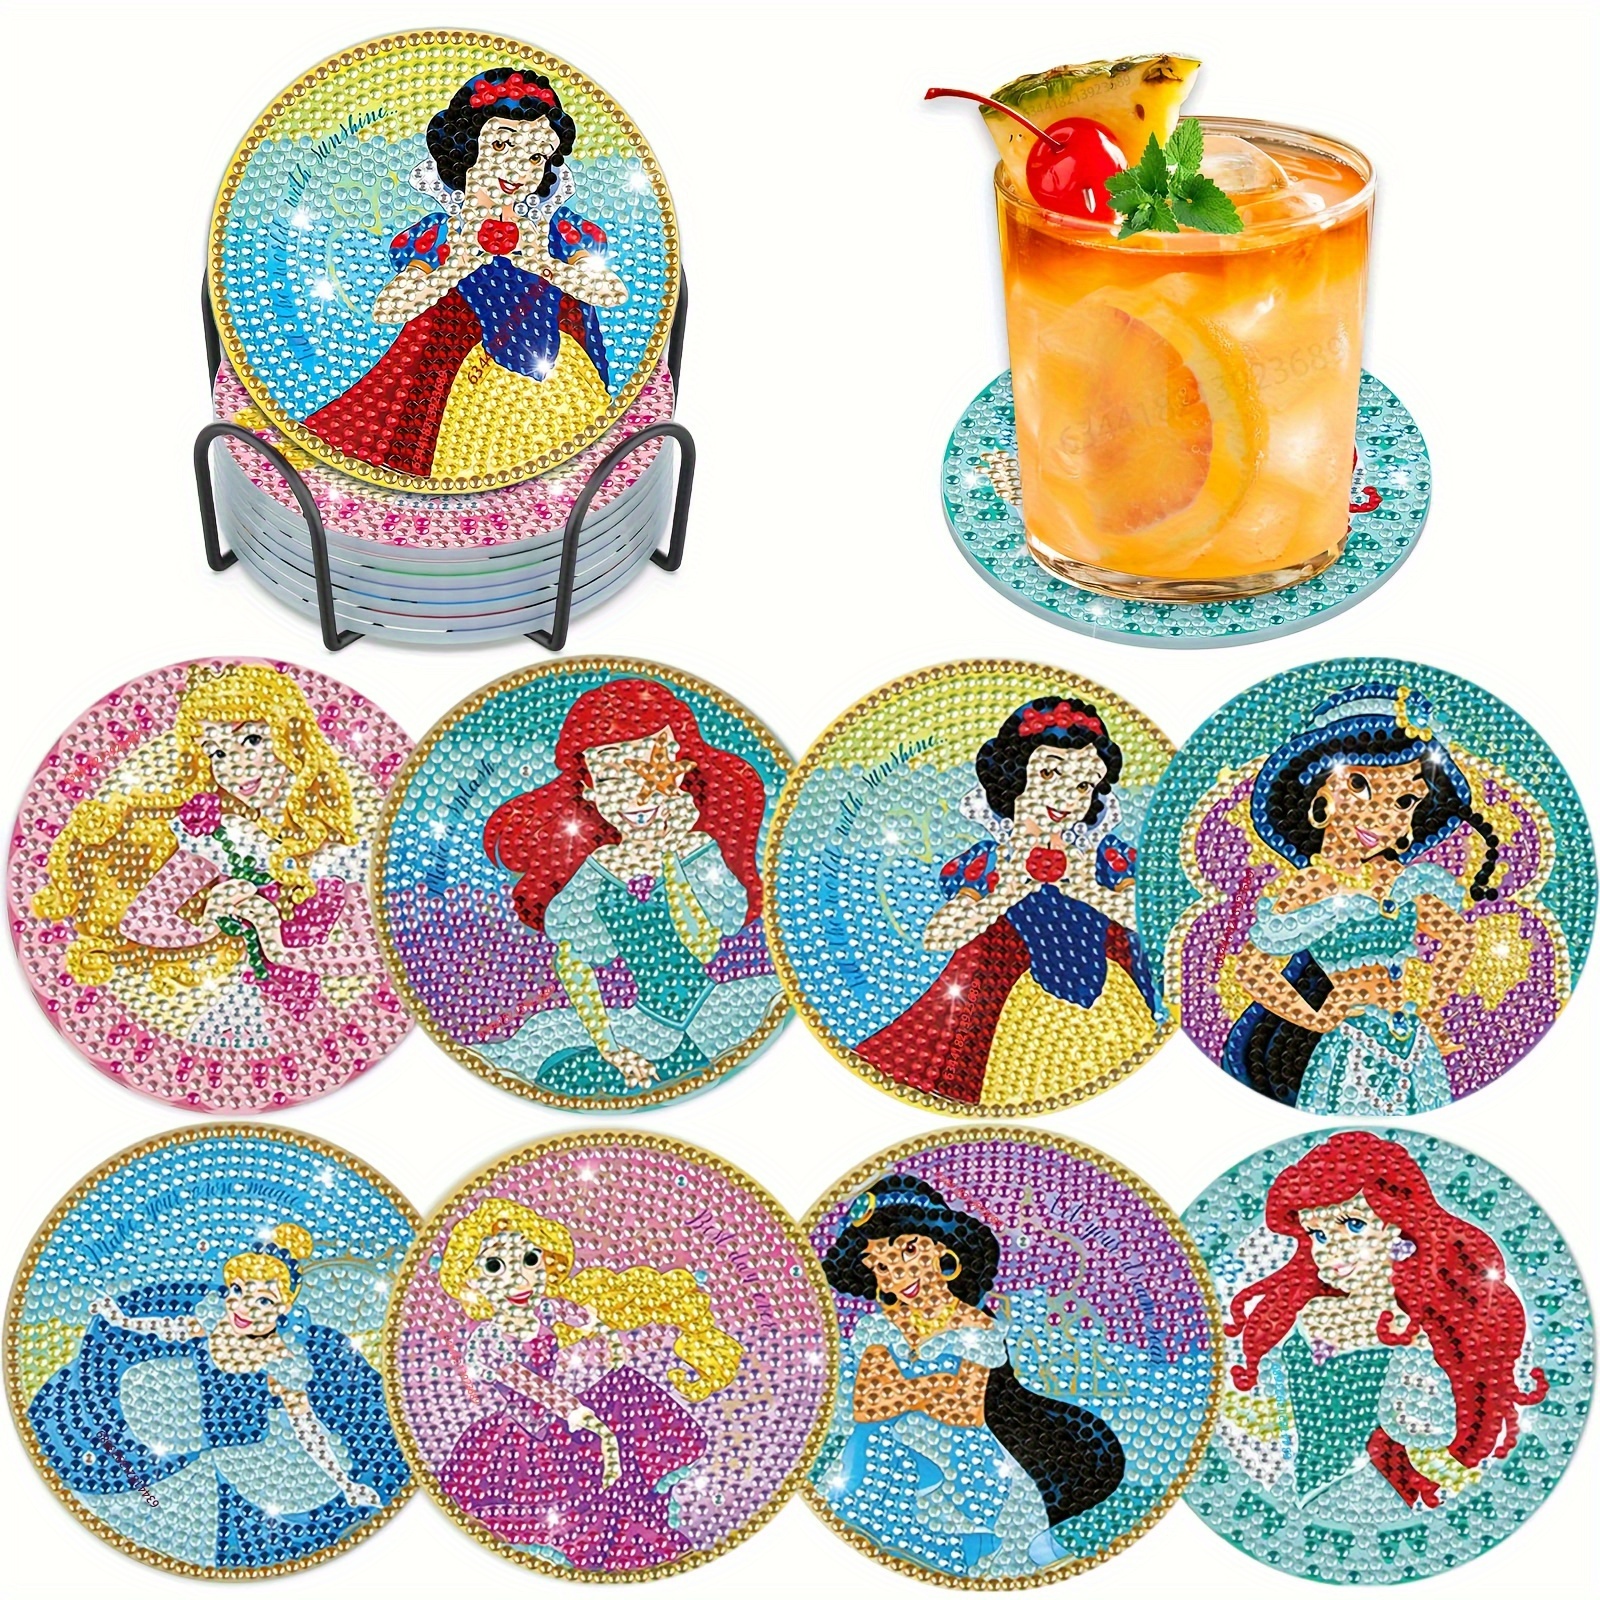 

8pcs Diy Diamond Art Painting Coaster Set Diy Cartoon Princess Table Placemat Insulation Pad Home Decor Gifts.